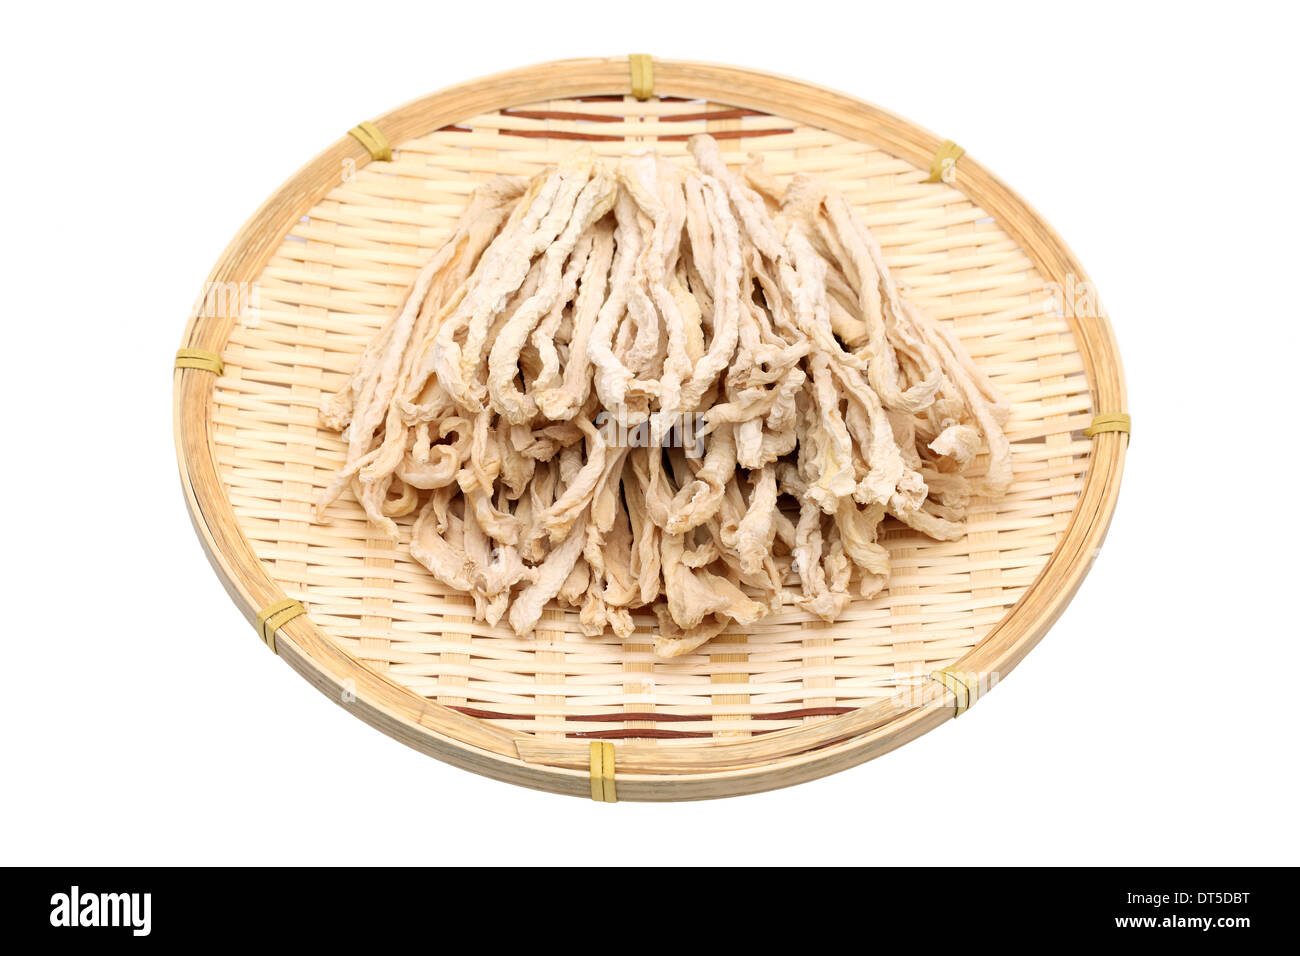 Radis secs tranche sur panier de bambou, de l'ingrédient alimentaire japonais Banque D'Images